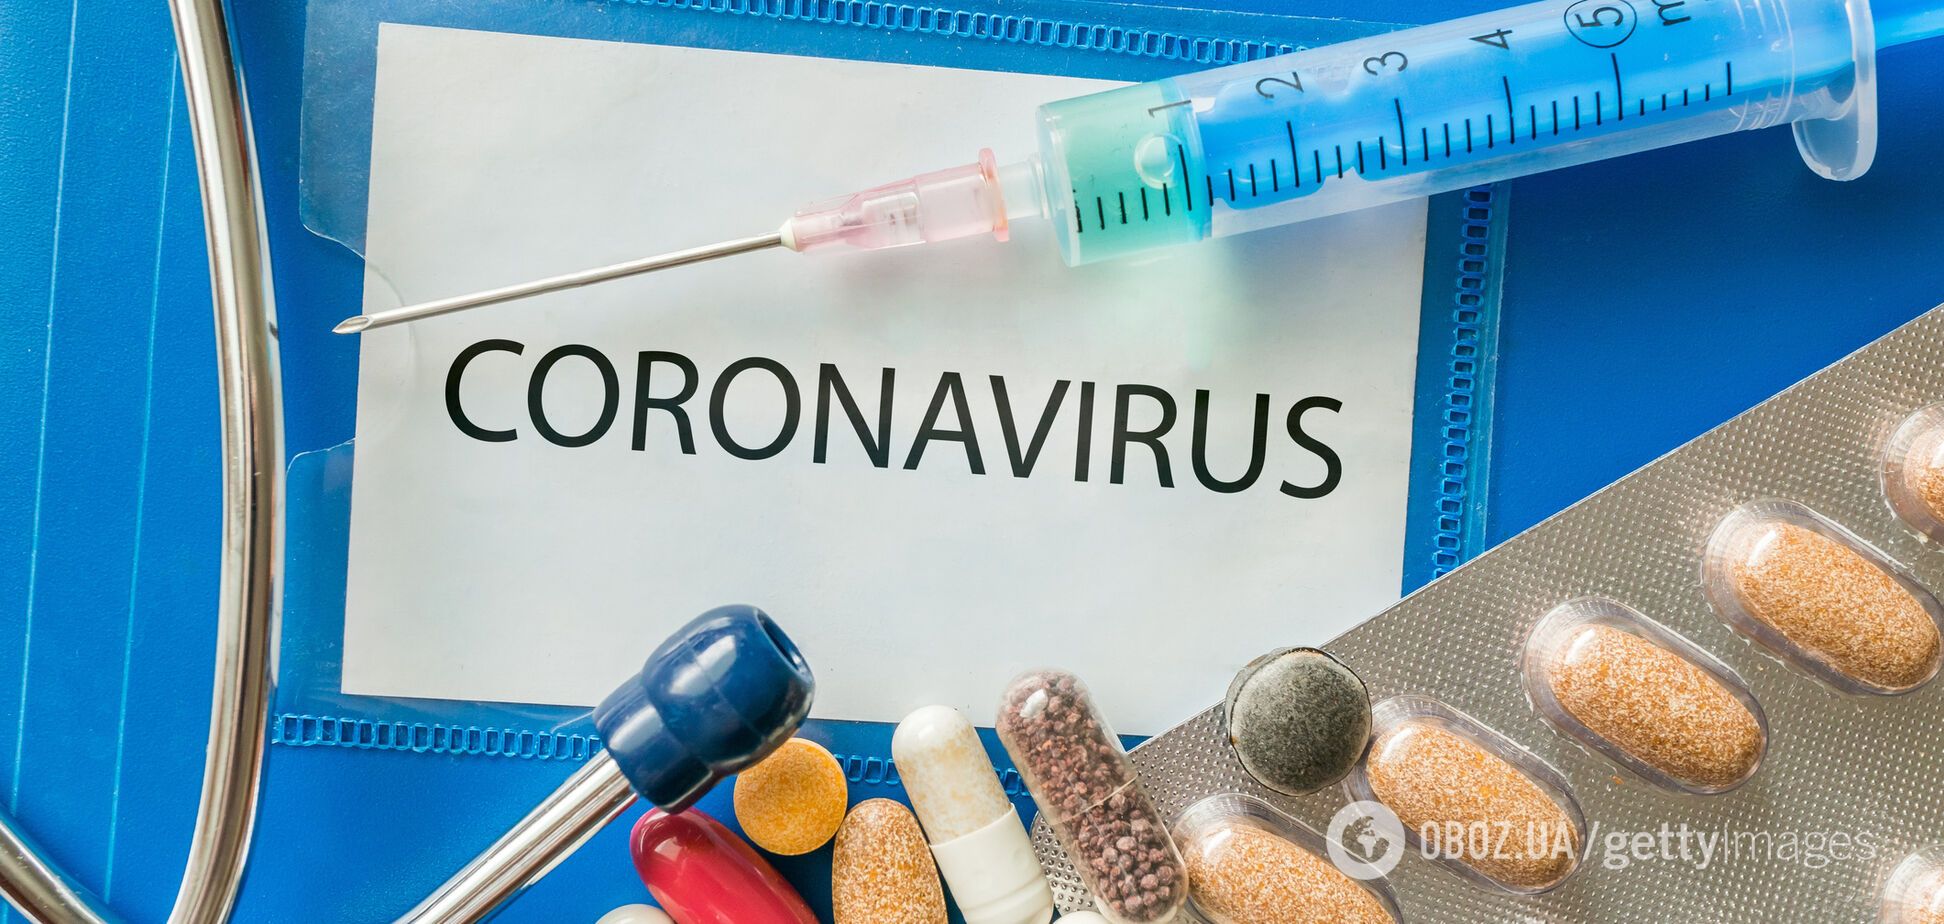 У хворих немає симптомів! Стало відомо про 'маскування' коронавірусу в Україні